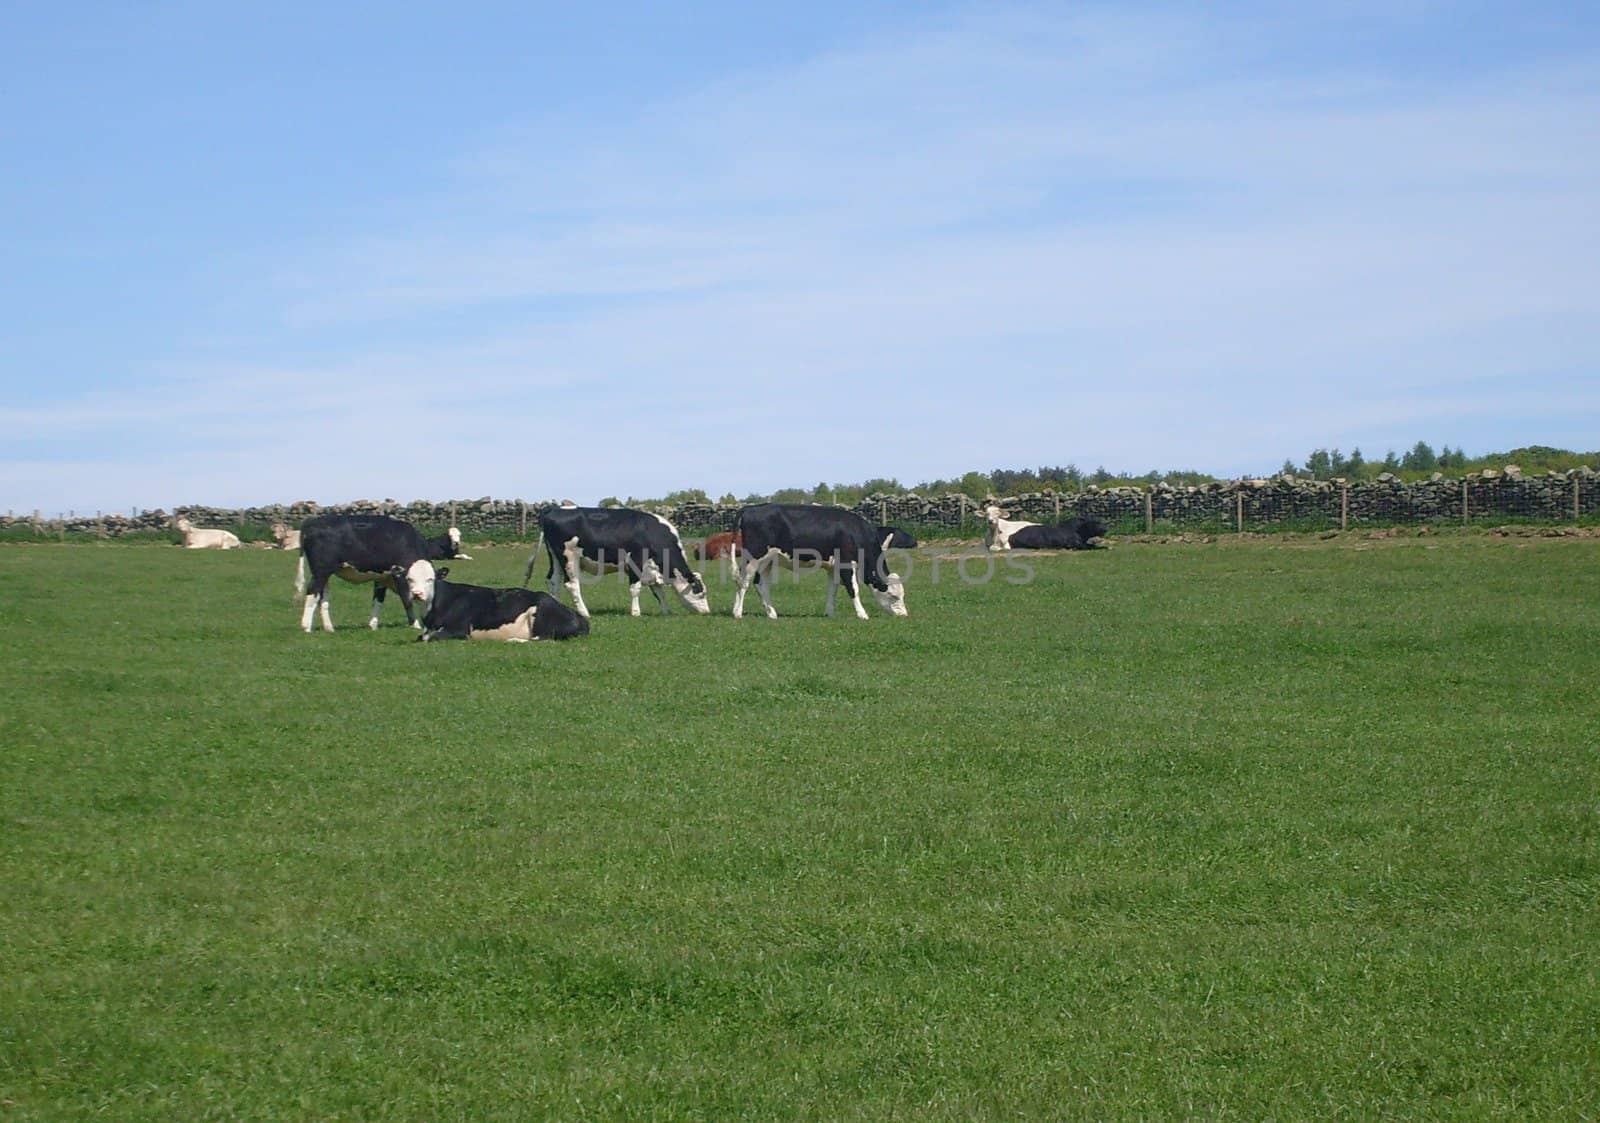 Cows grazing in field by speedfighter